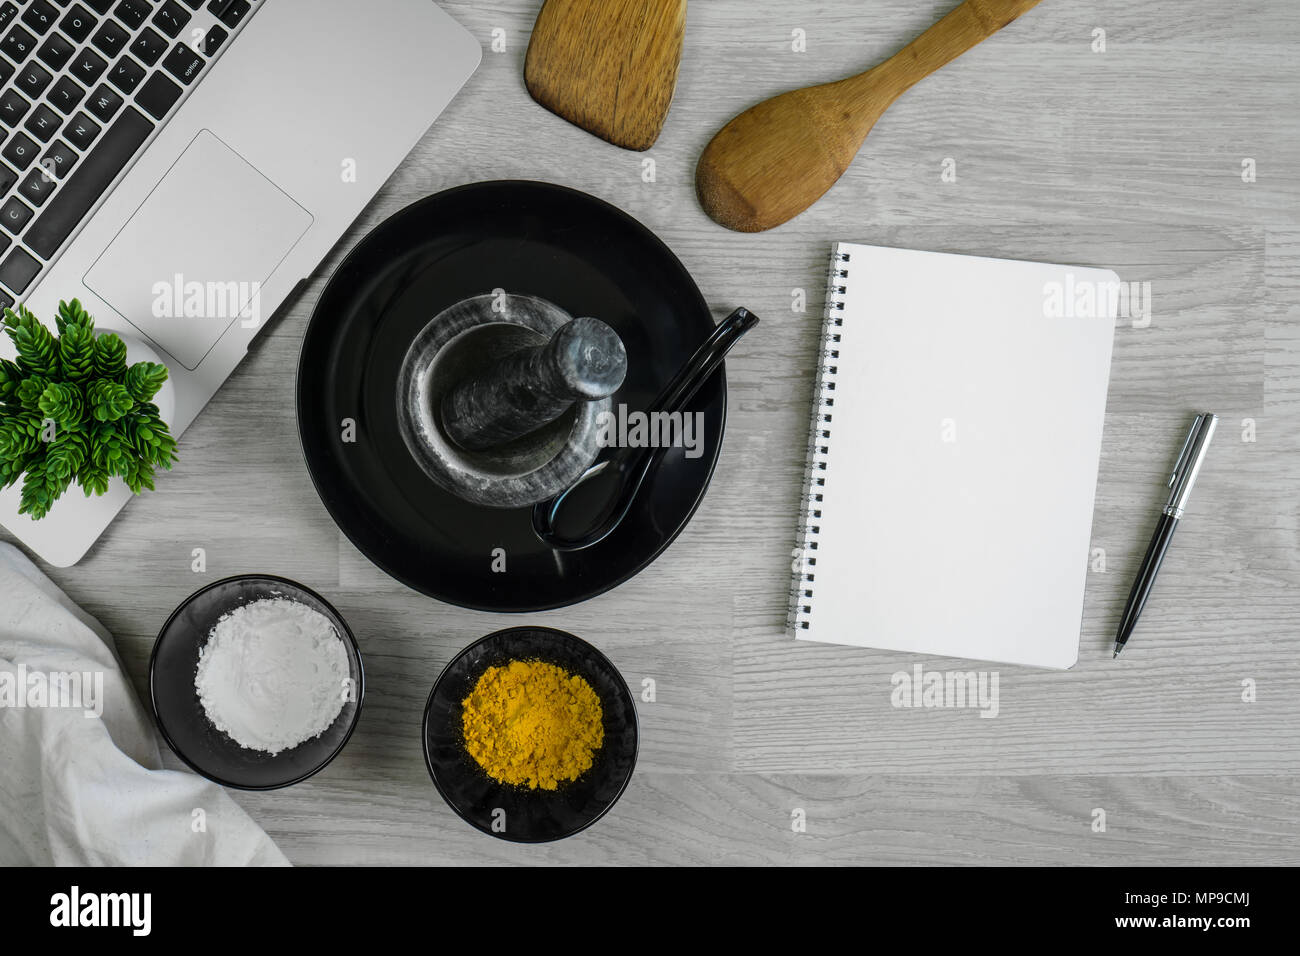 Besteck mit Gewürzen, Chilis, Mörtel, Laptops und Notebooks auf Holz Tabelle hinterlegt. Küchengeräte. Stockfoto